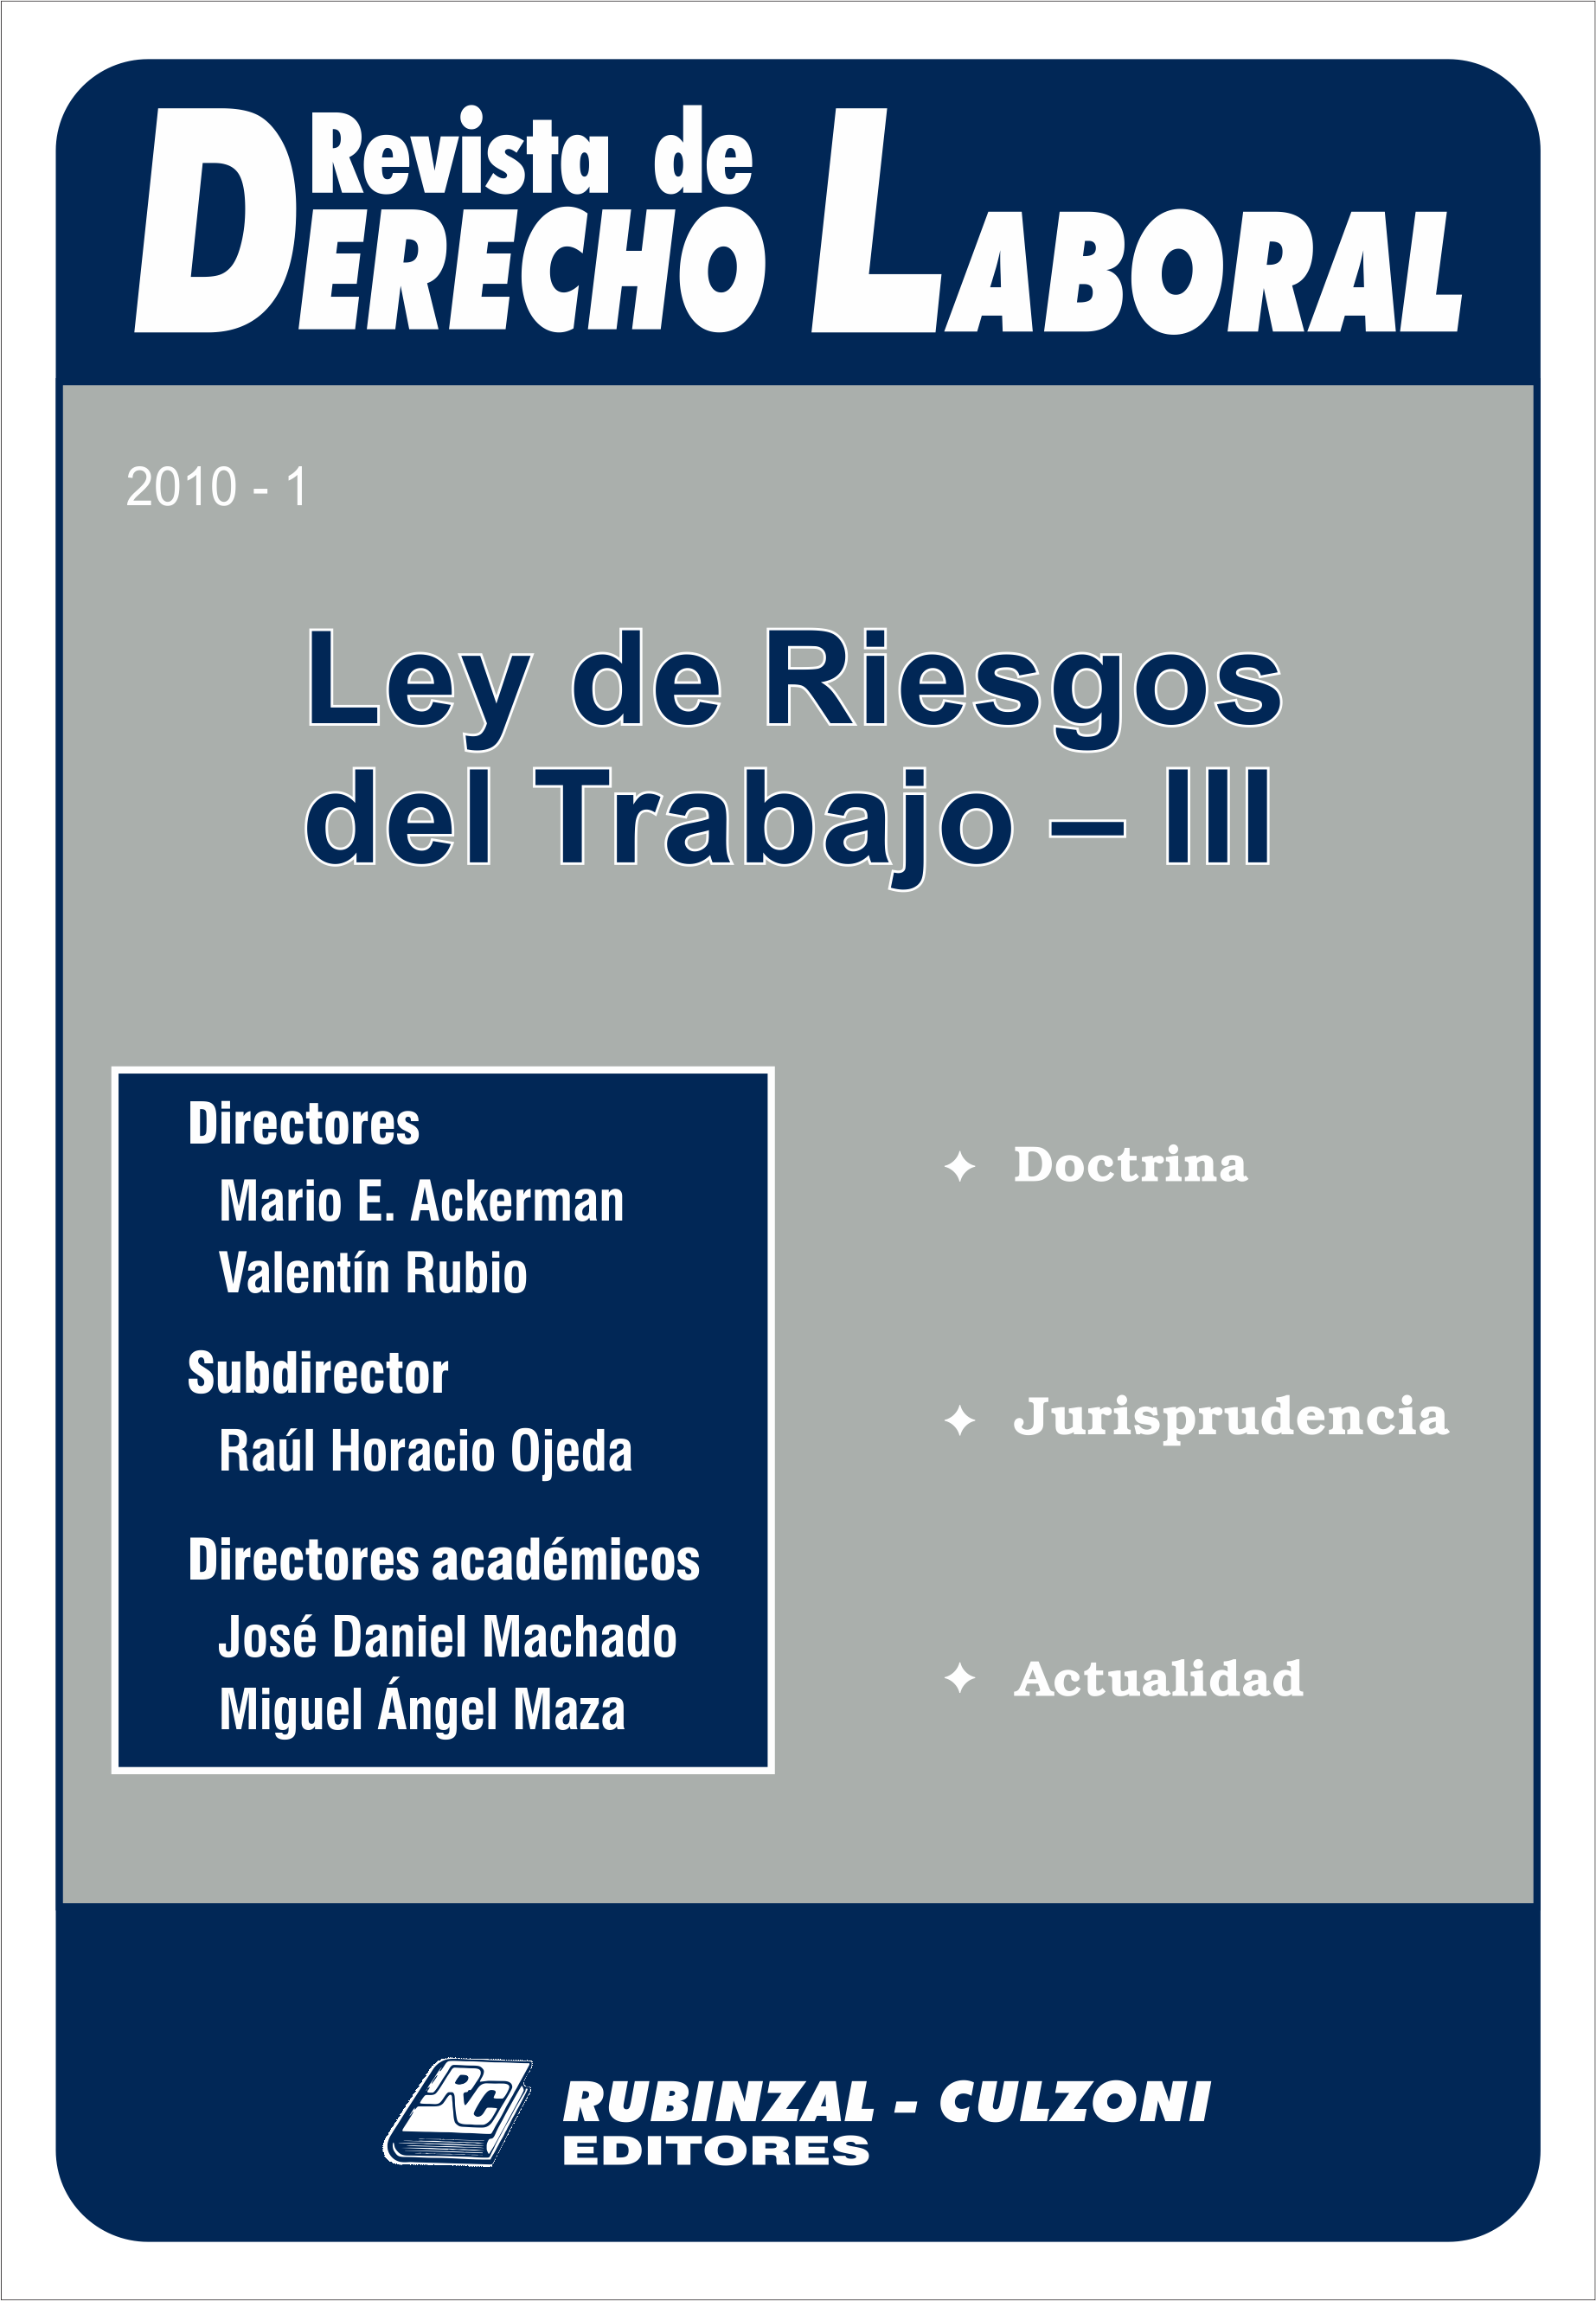 Revista de Derecho Laboral Actualidad - Año 2010 - 1.